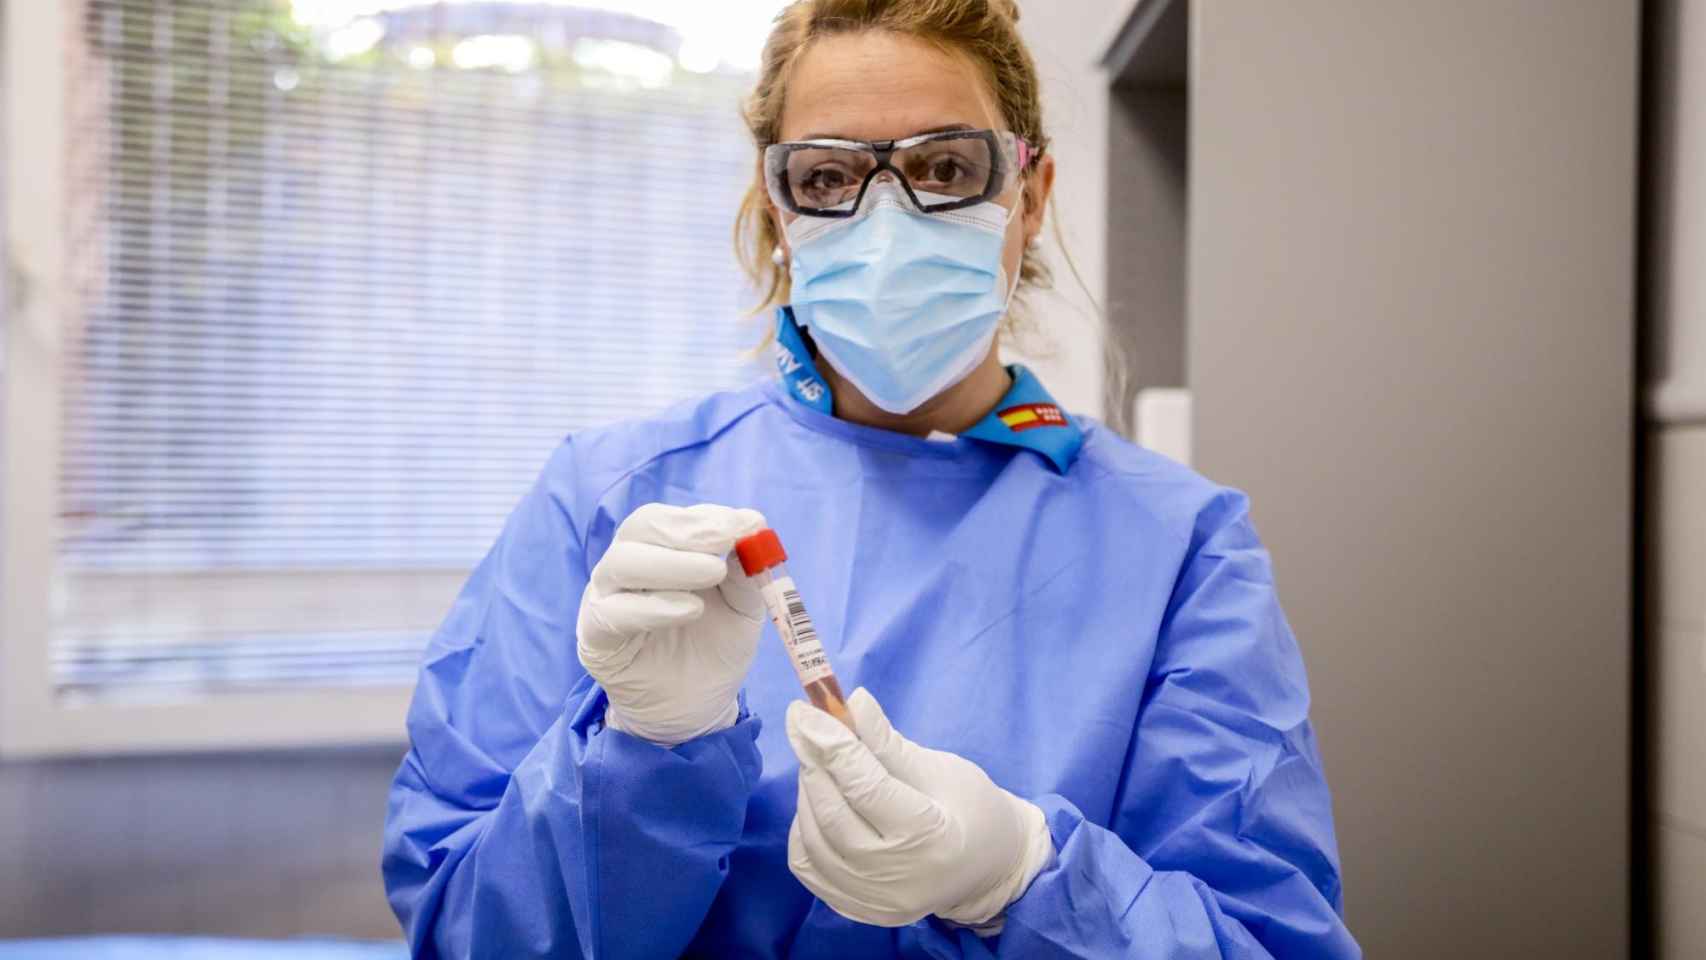 Una trabajadora sanitaria sujeta una prueba PCR por el coronavirus / EP